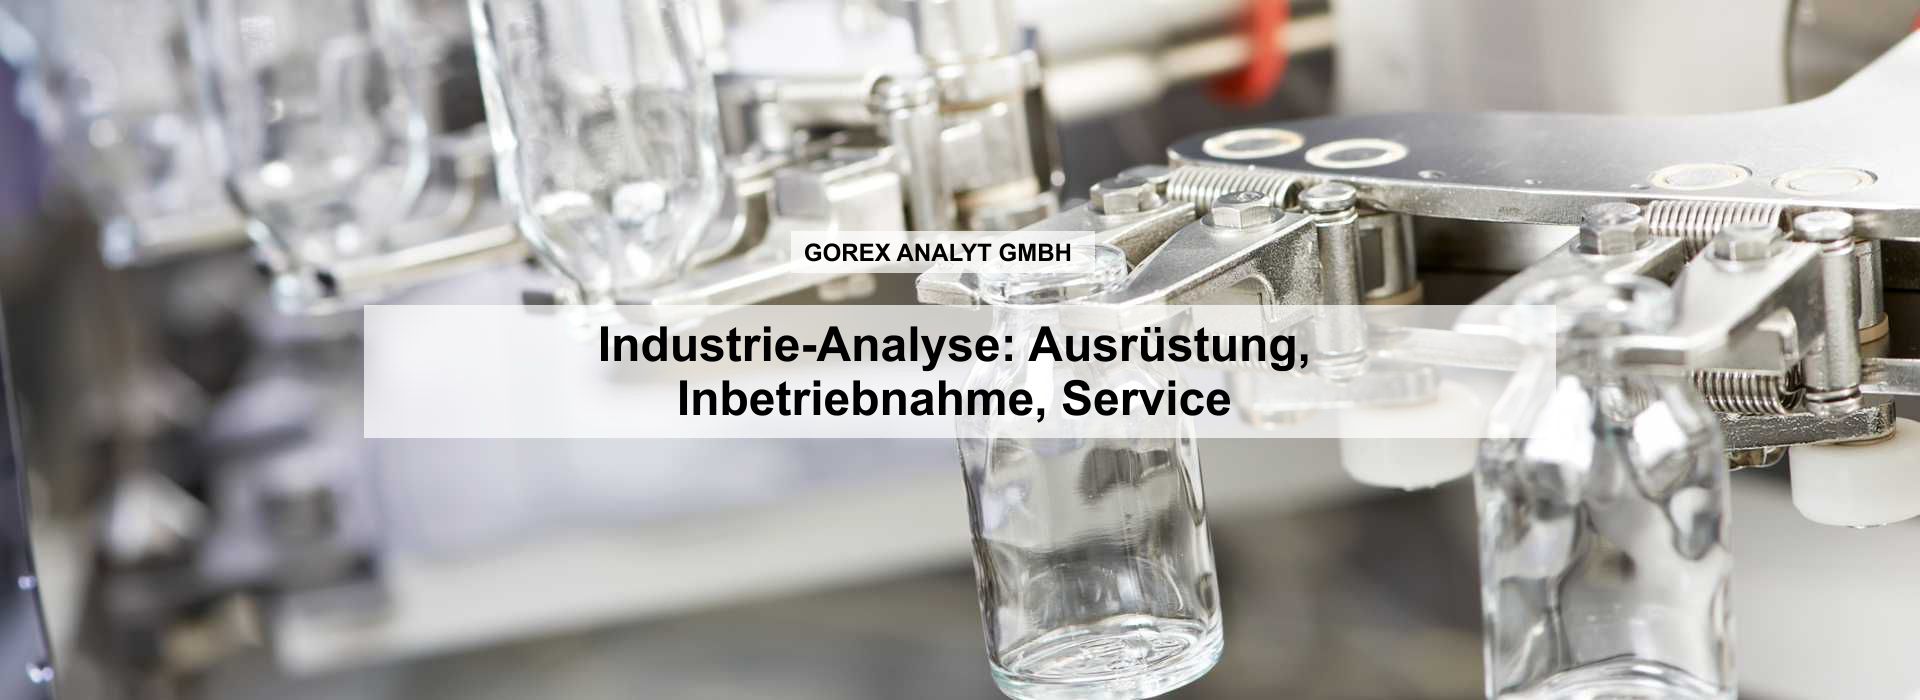 header GOREX Analyt GmbH